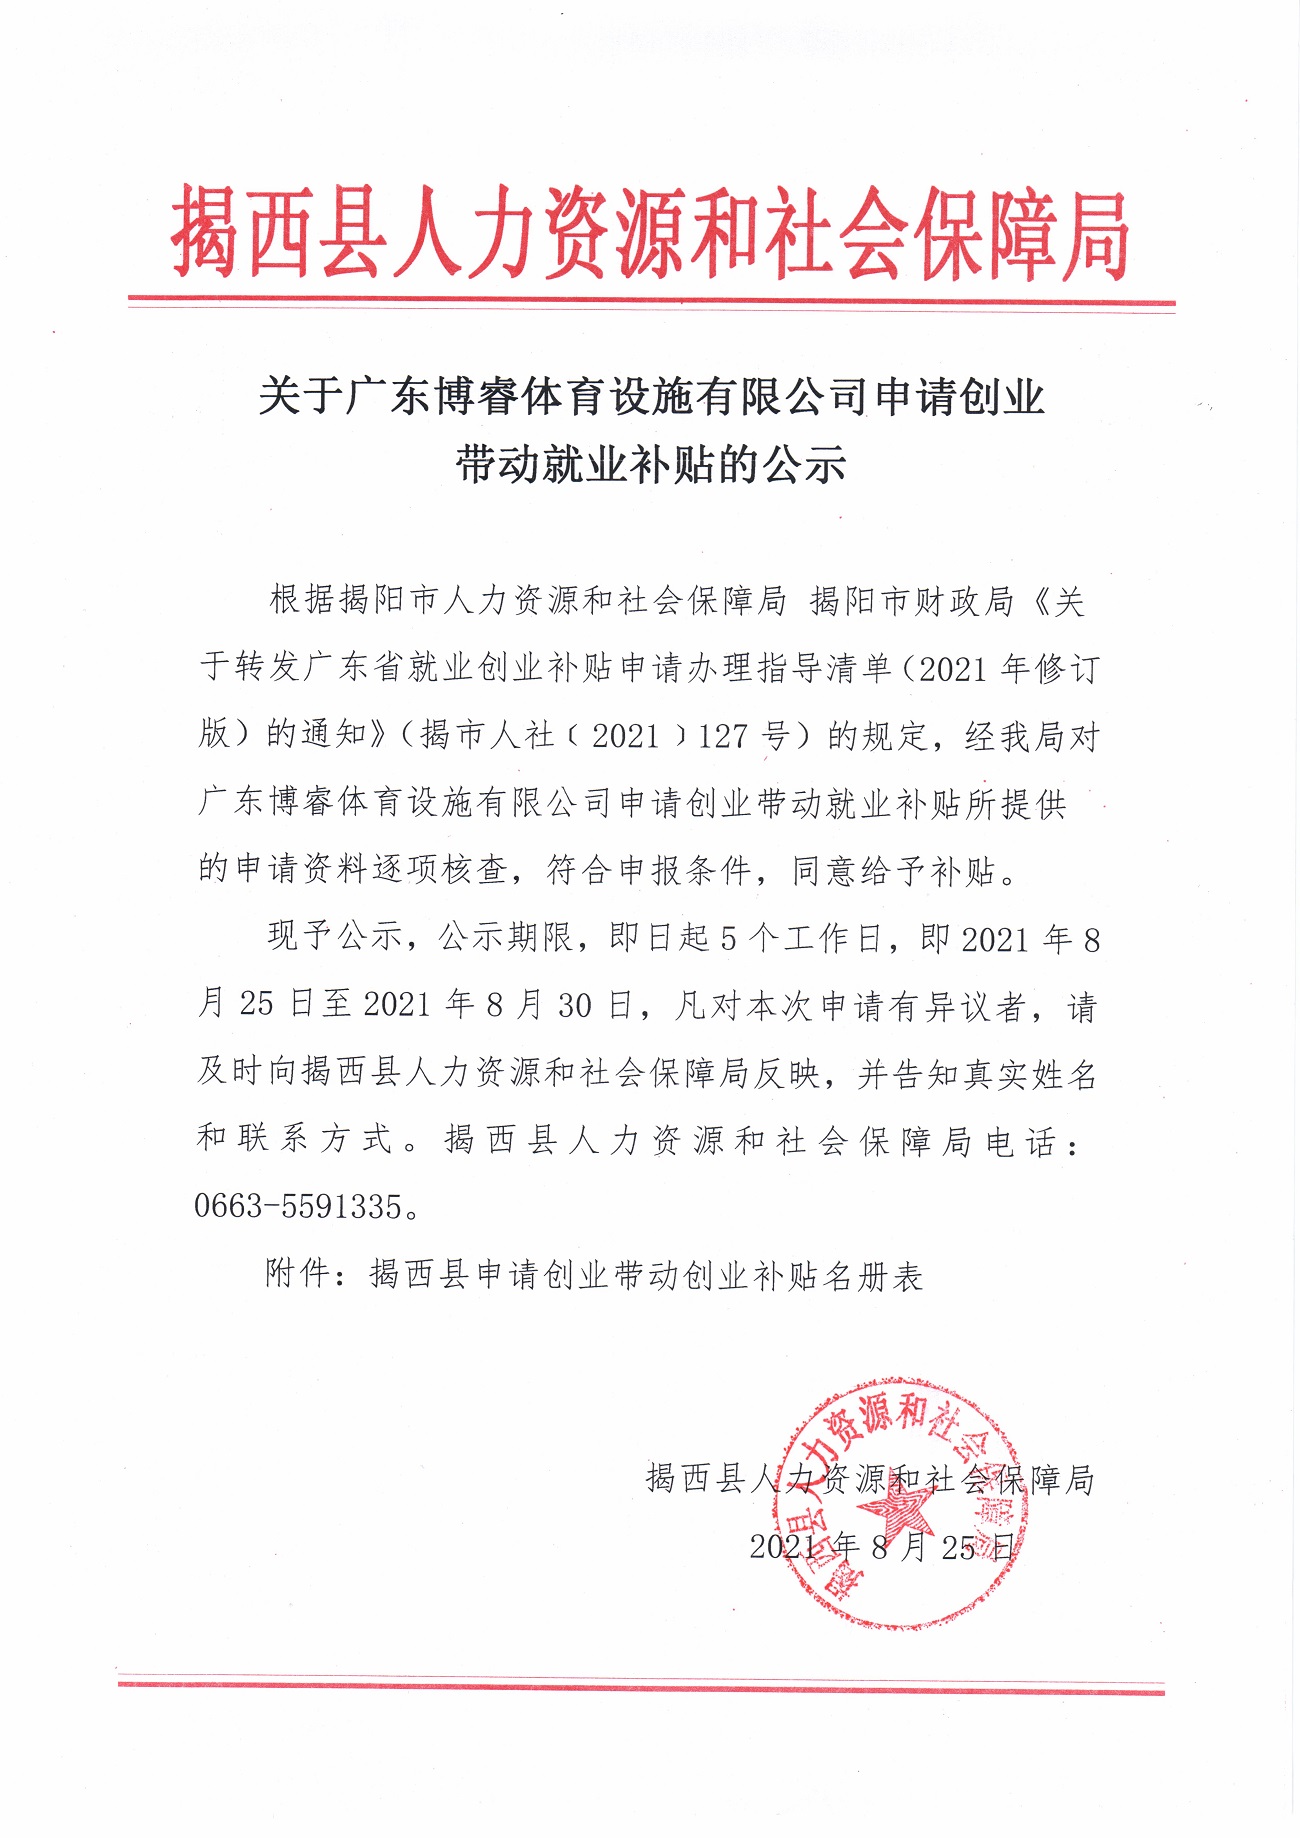 关于广东博睿体育设施有限公司申请创业带动就业补贴的公示.jpg